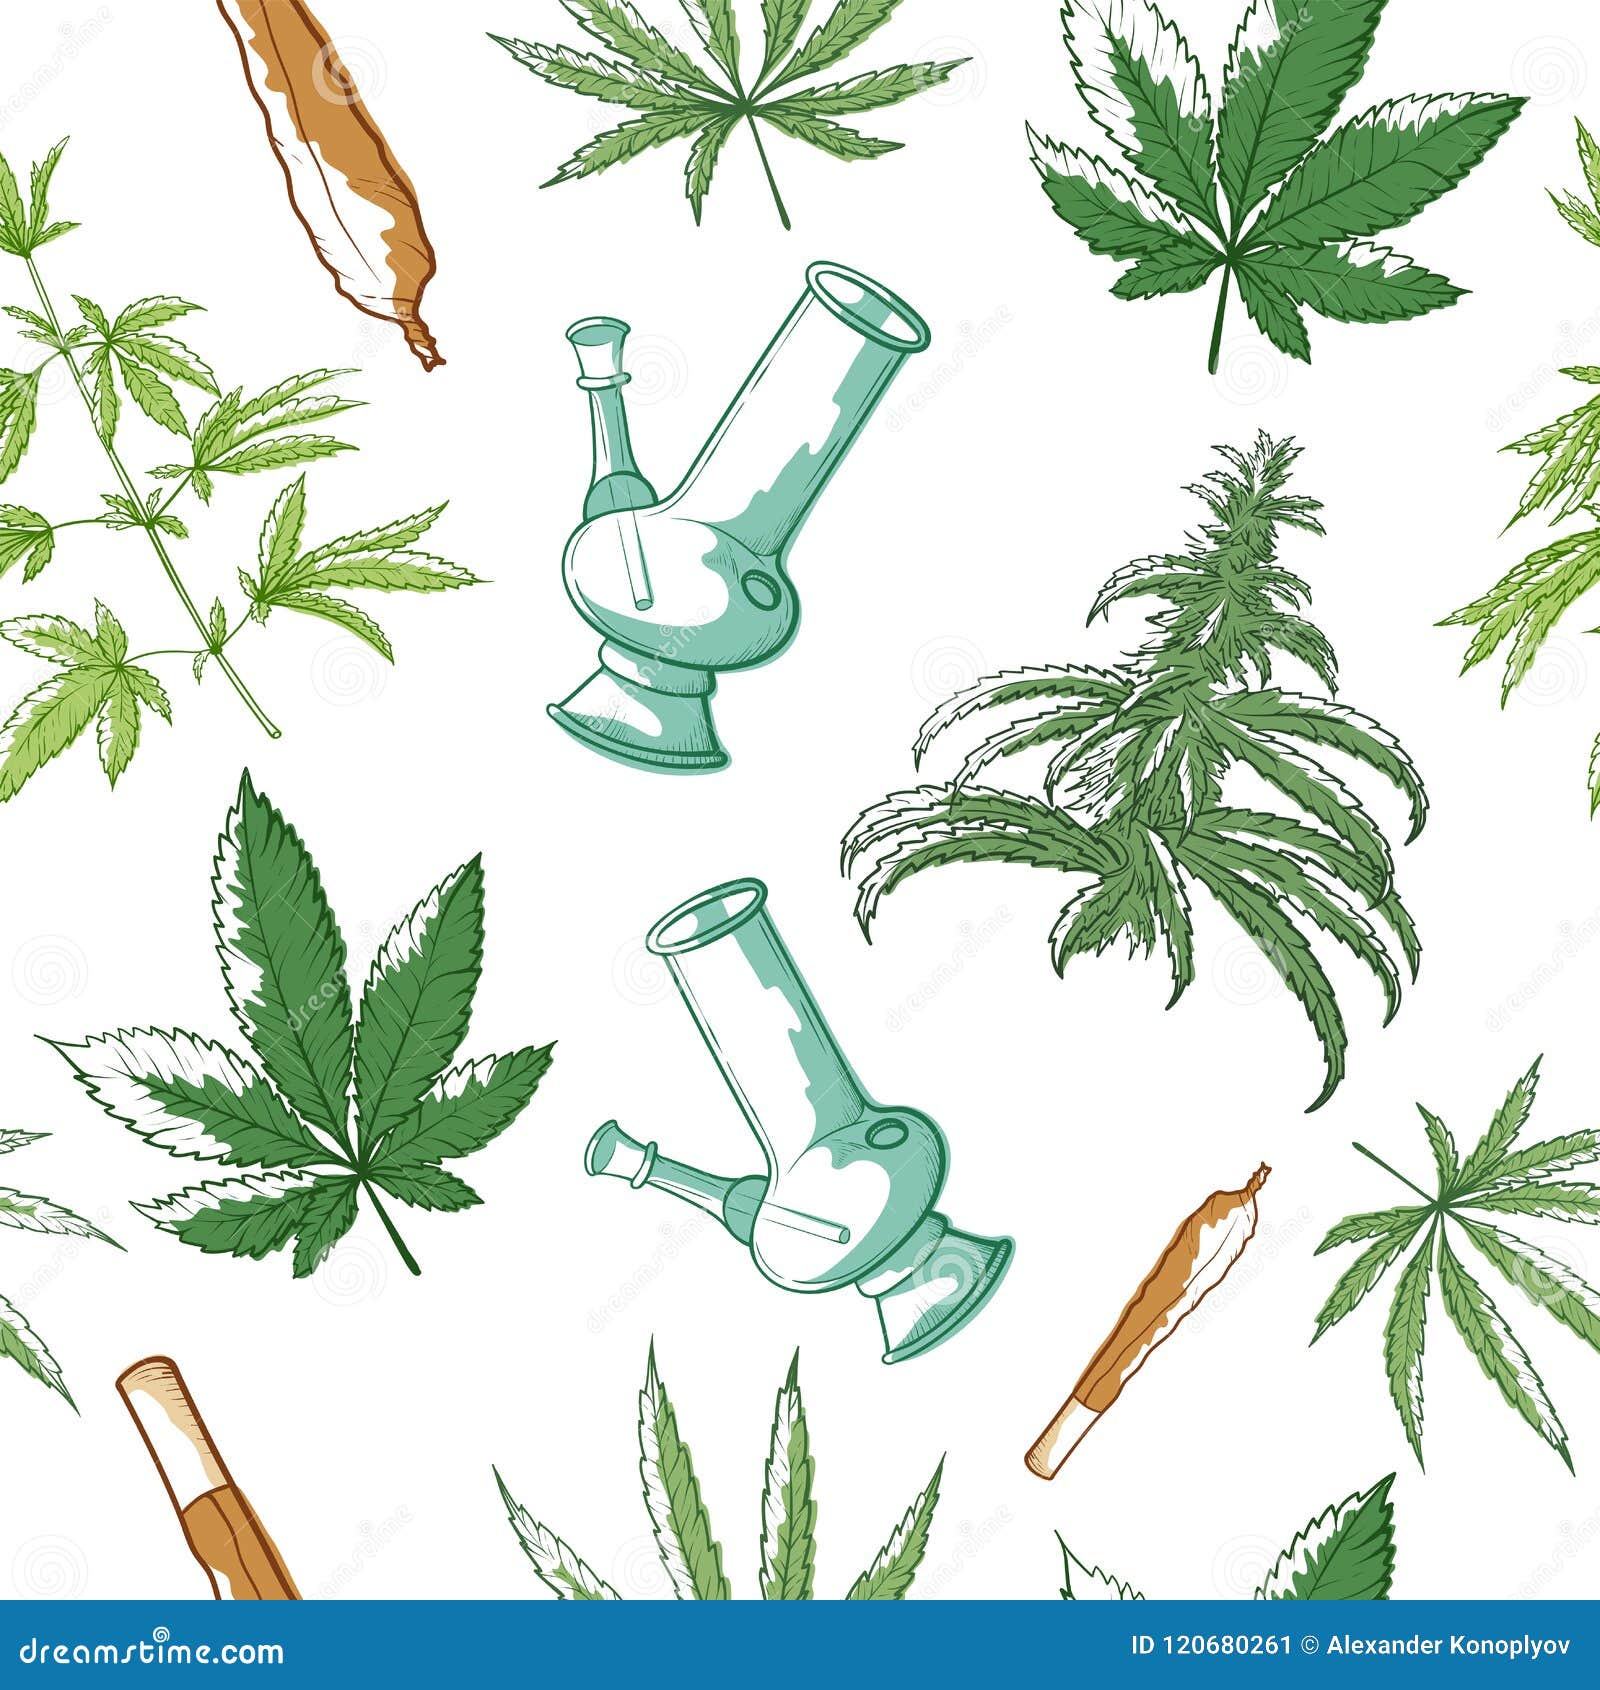 Картины марихуаны